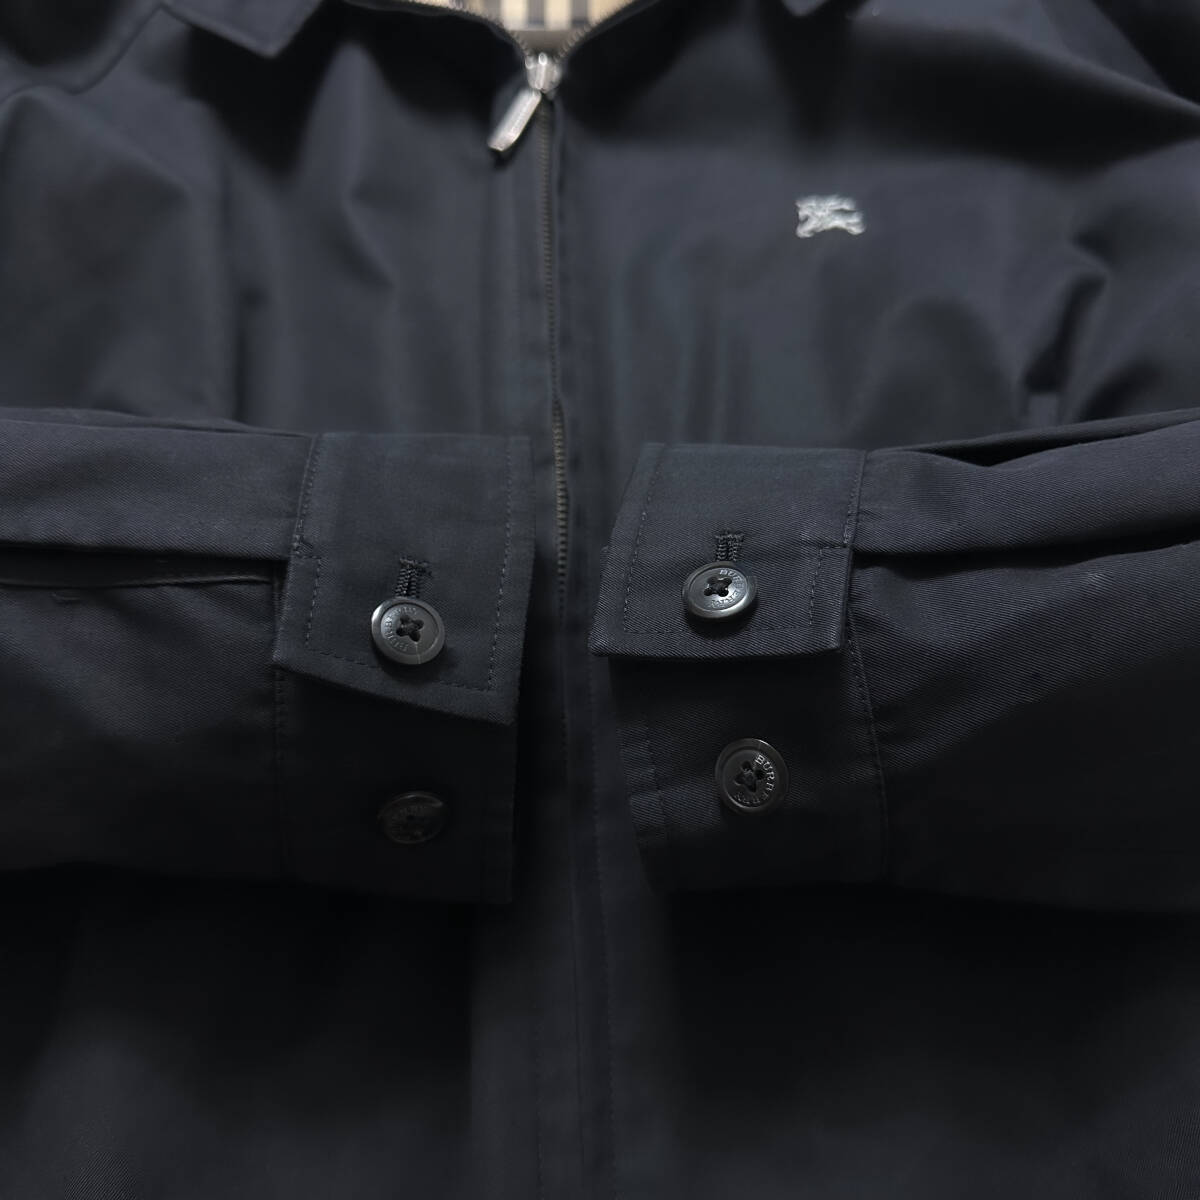 絶版美品BURBERRY LONDON M-65ミリタリージャケットジップアップジャケットL~Mノバチェック柄黒ブラック大きいサイズバーバリーロンドンの画像4